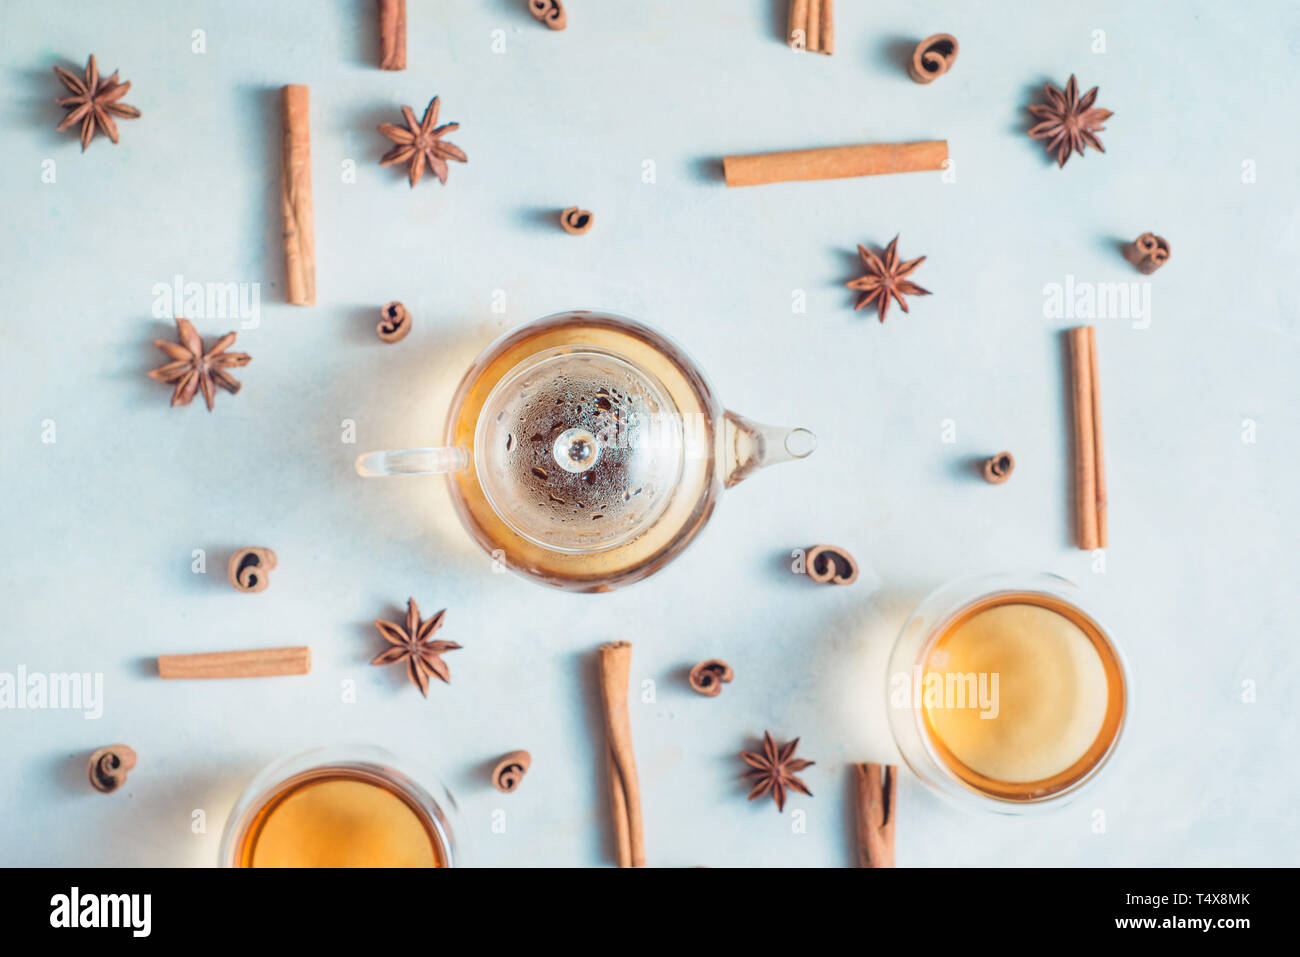 Kreative Kaffee mit Zimt, Anis Sterne, Teekanne und Tee klangschalen auf einen weißen Hintergrund mit kopieren. Heißes Getränk creative Flach. Stockfoto